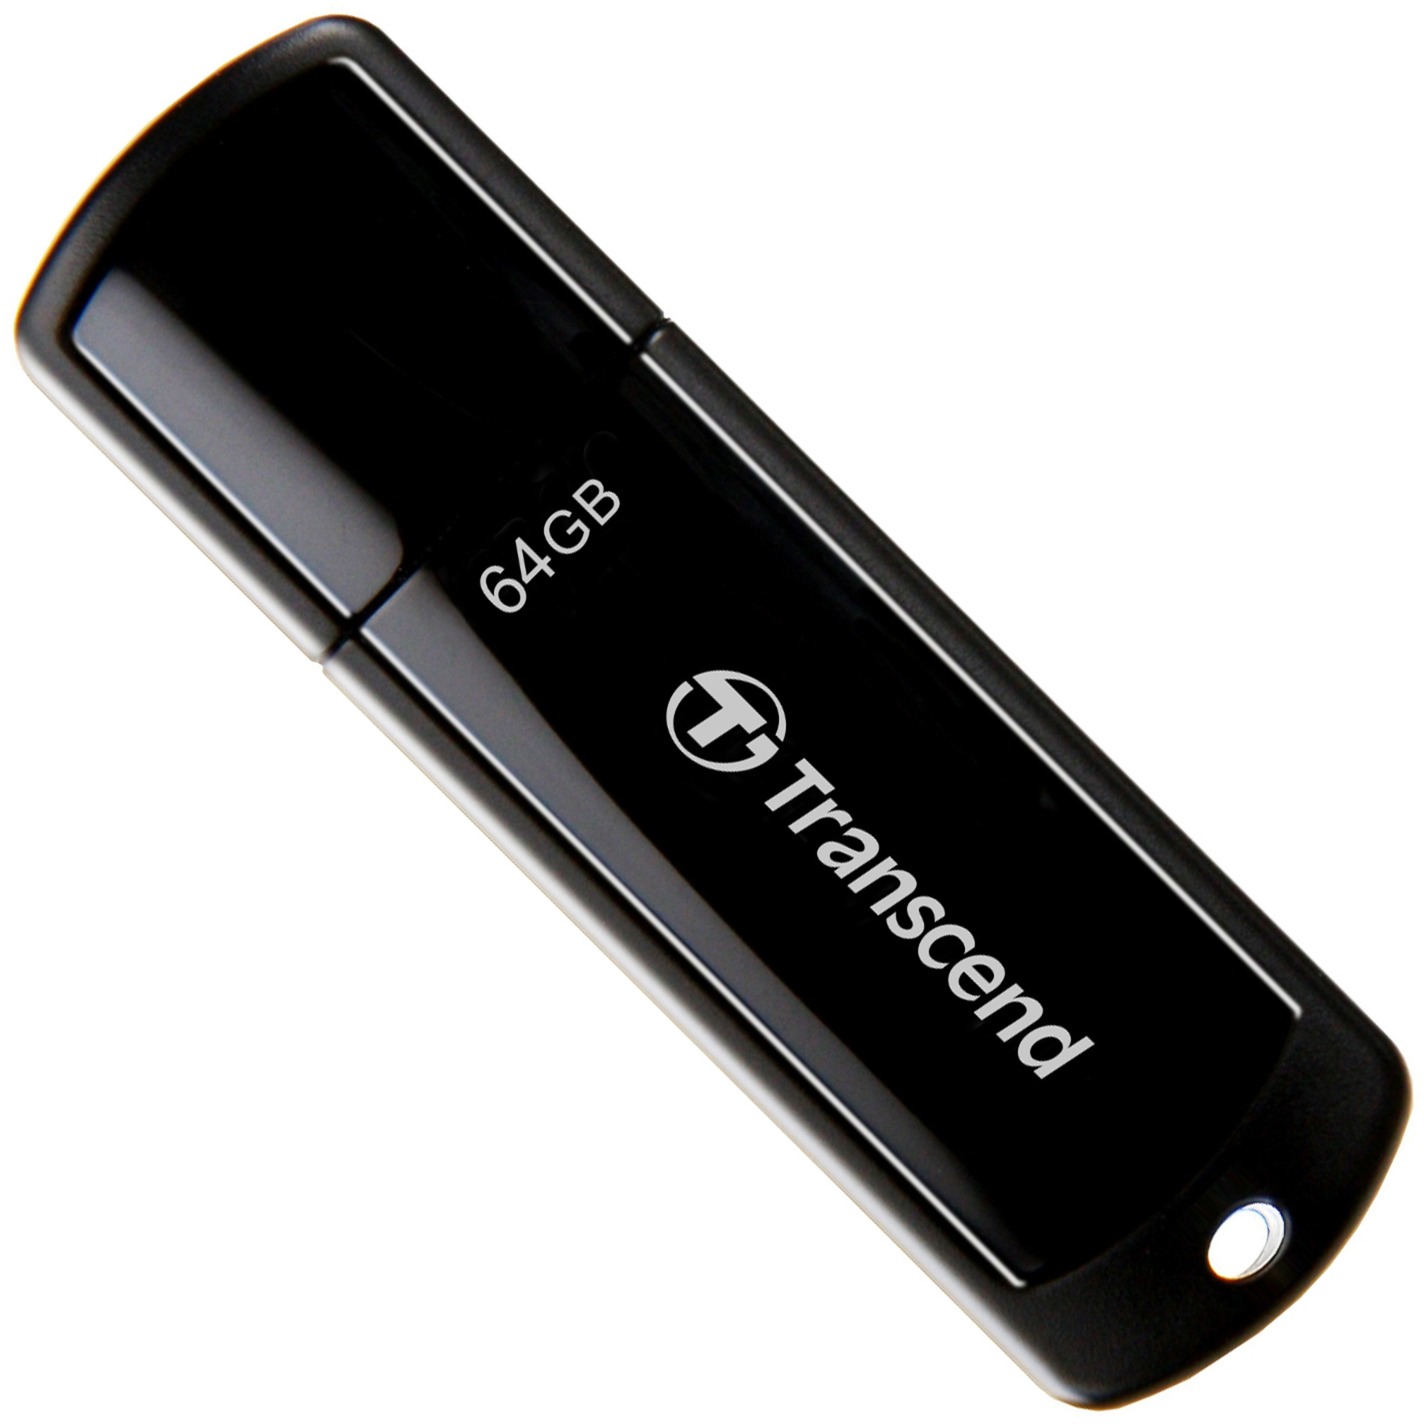 Image of Alternate - JetFlash 700 64 GB, USB-Stick online einkaufen bei Alternate